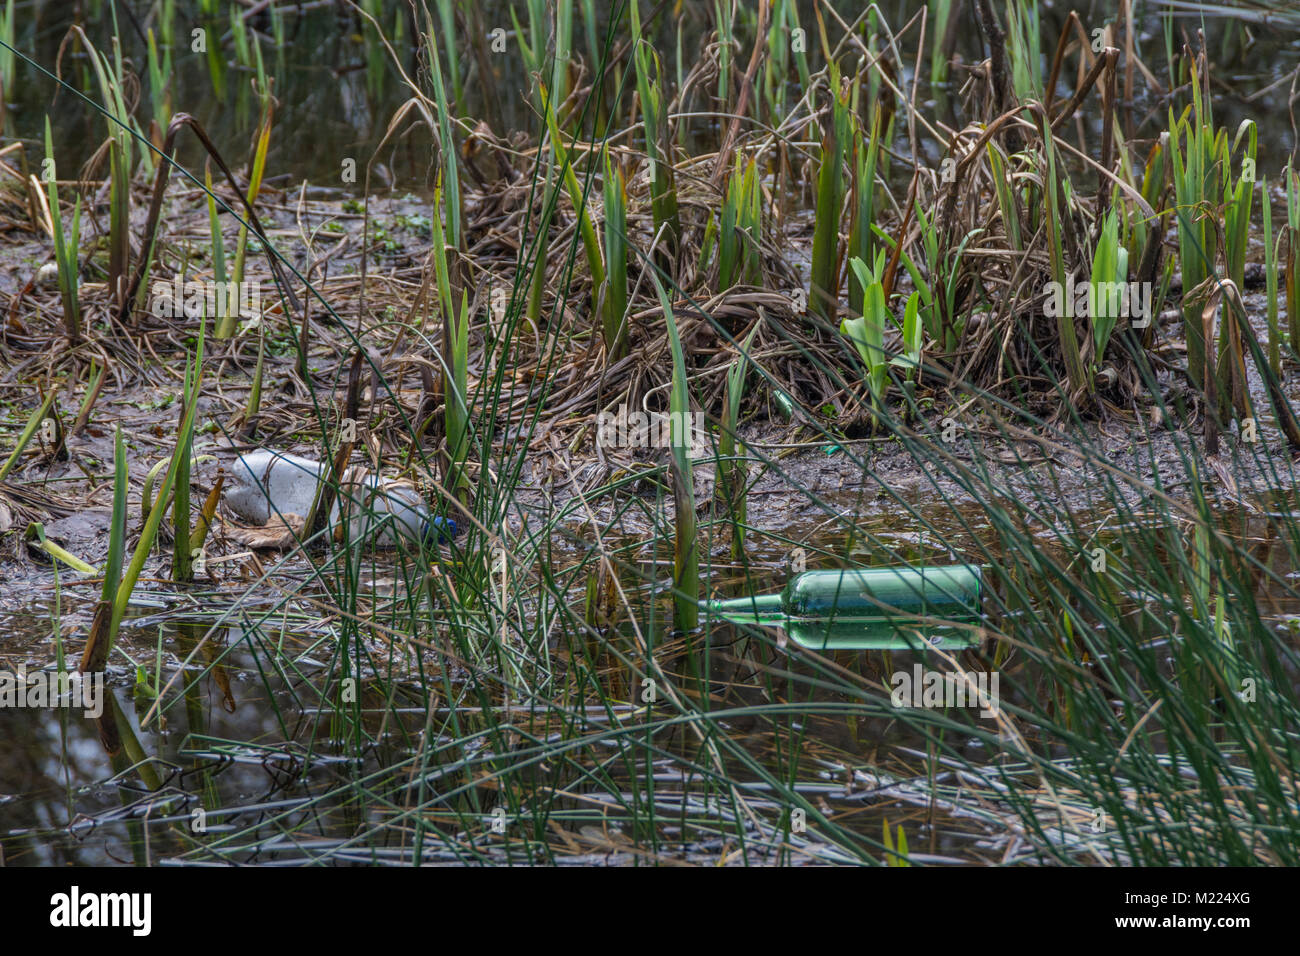 Les bouteilles en verre et plastique échoués en zone marécageuse - métaphore de la pollution de l'environnement en plastique / plastique déchets en plastique sur la guerre / Campagne Banque D'Images